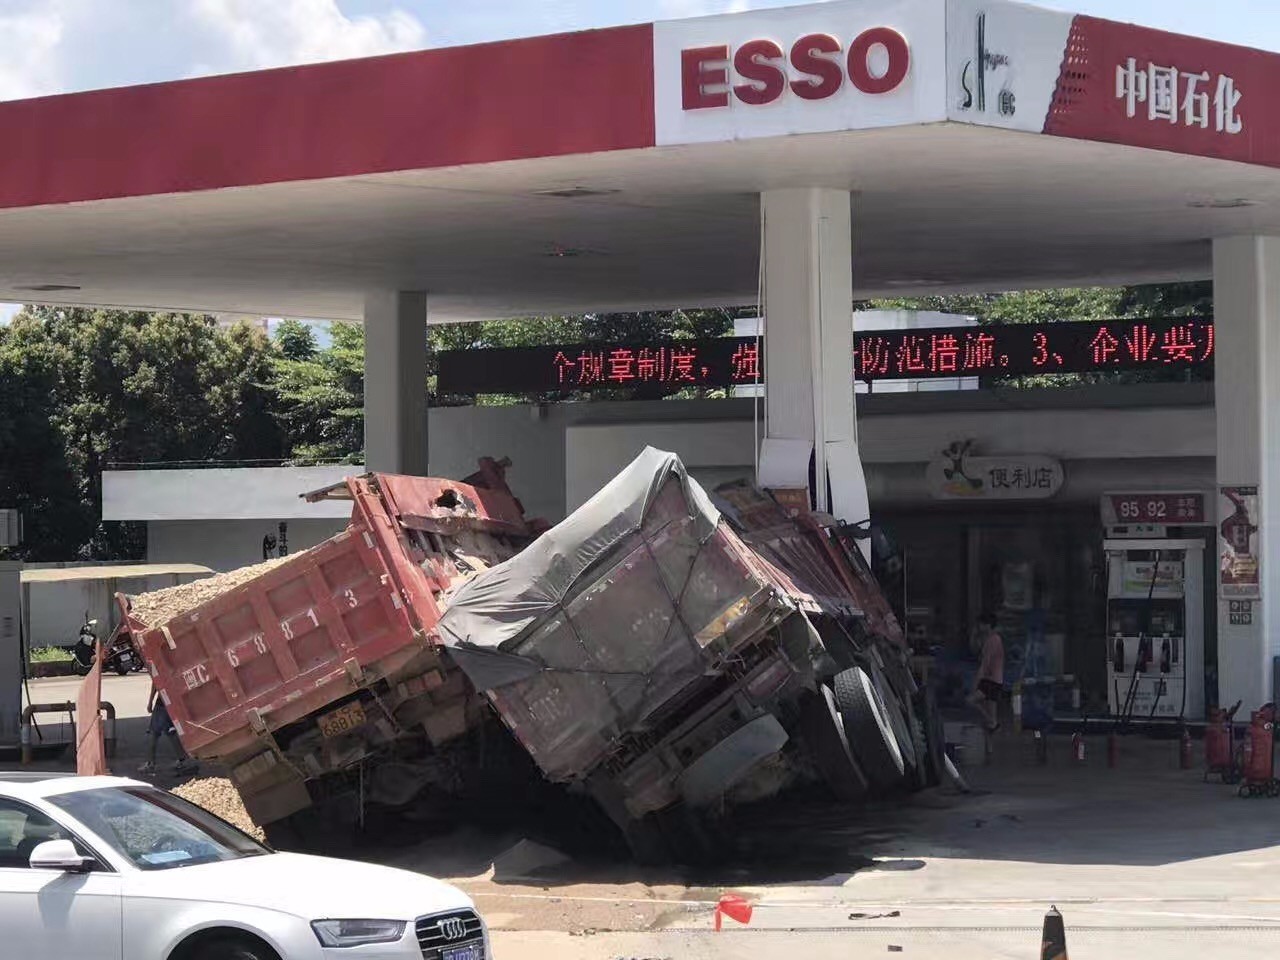 吓人!永春县桃城镇花石加油站两辆大货车撞上了加油站的柱子并侧翻